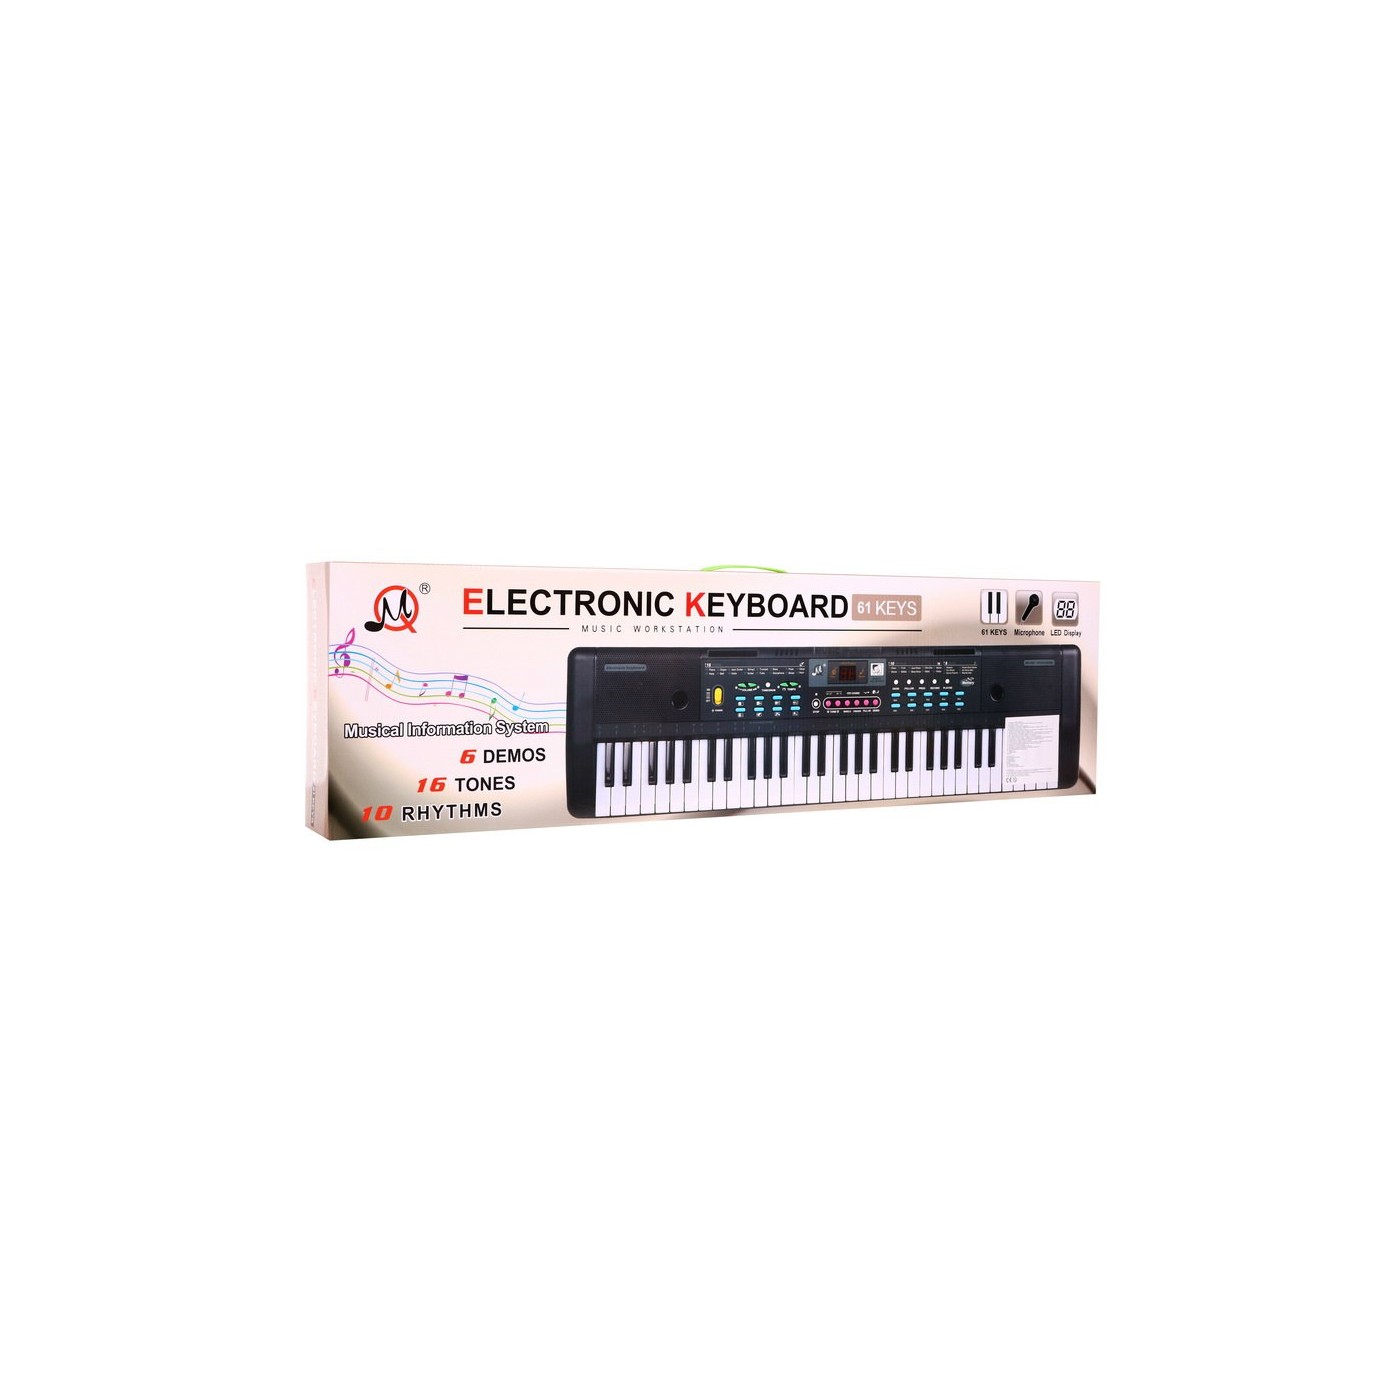 Keyboard dla dzieci 5+ Stojak na nuty Mikrofon + Kolorowe przyciski - model nr 605